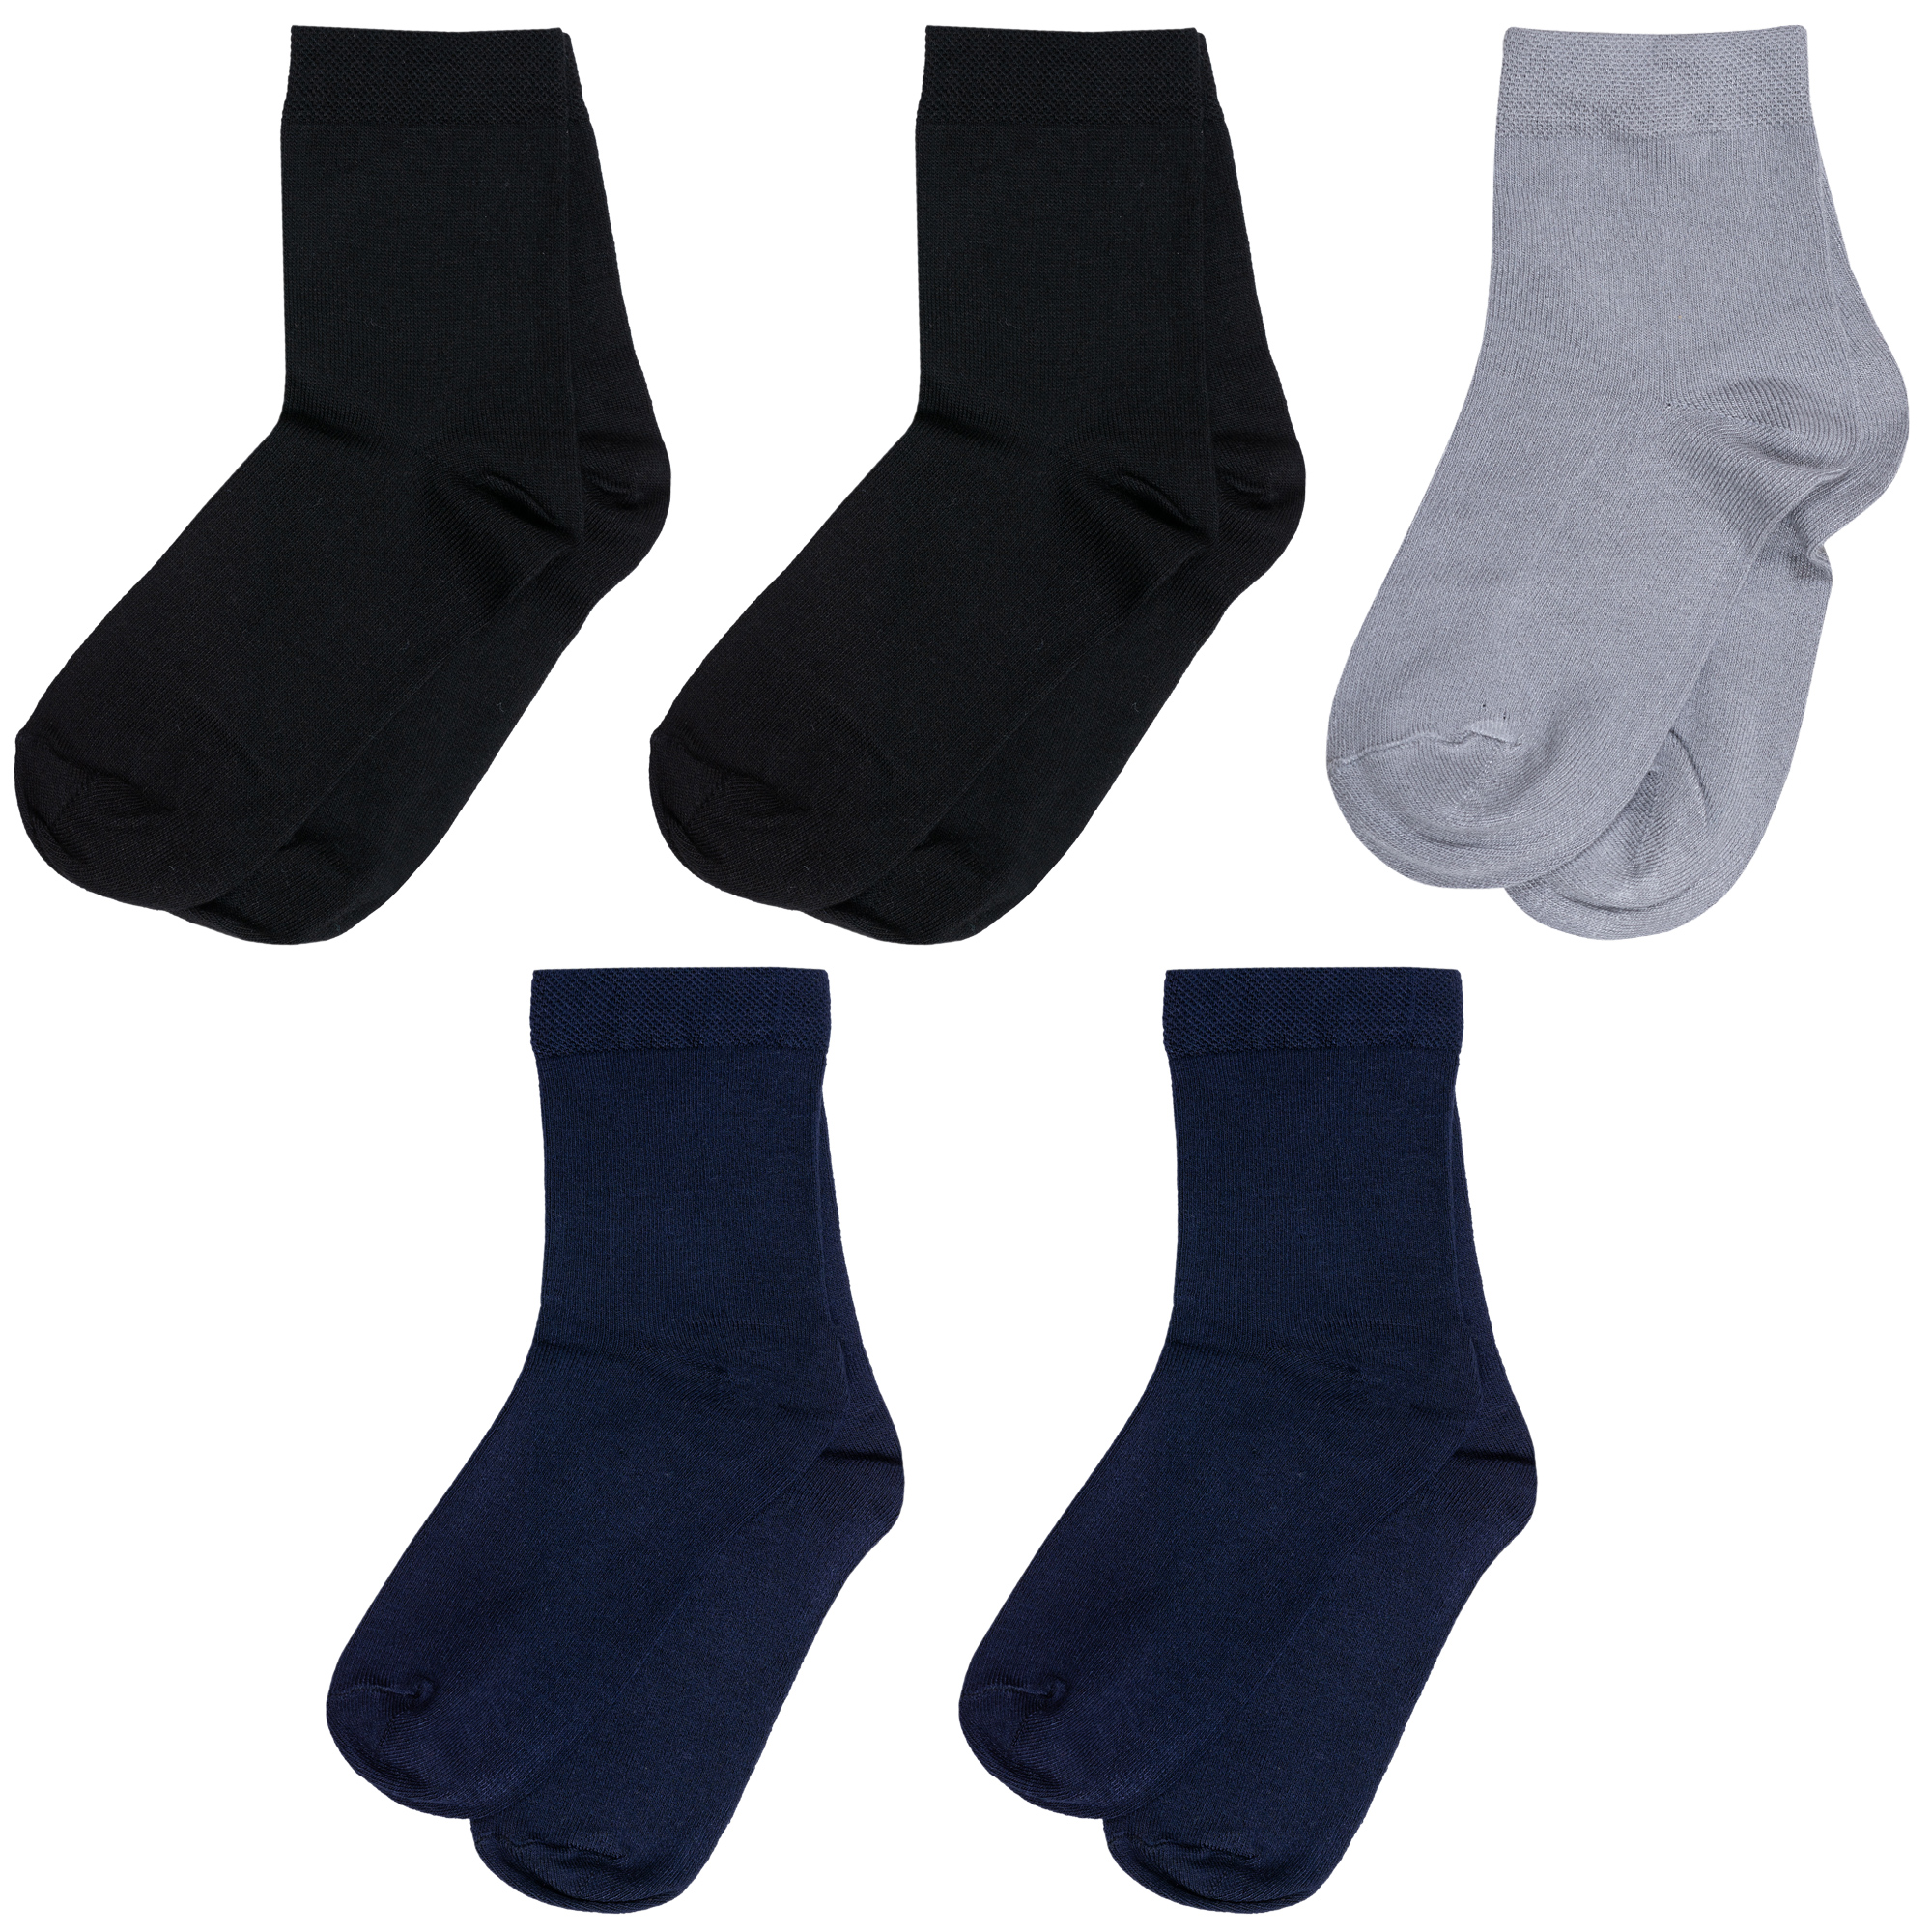 Носки для мальчиков ХОХ 5-D-1425 цв. синий; серый; черный р. 24